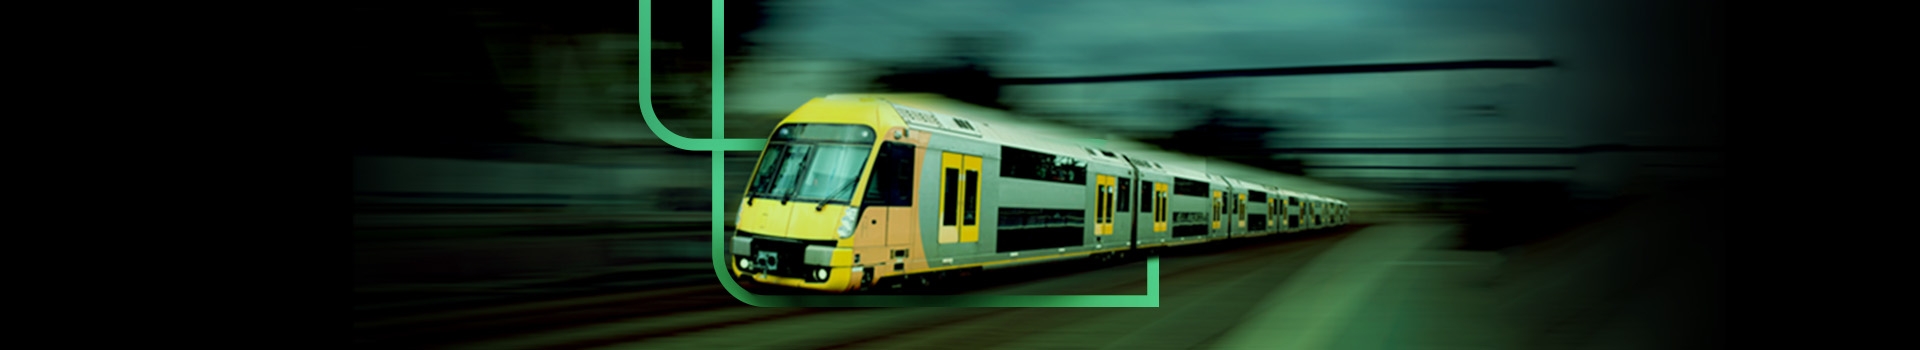 Trem veloz na cor amarela com o logo da estapar em volta do trem